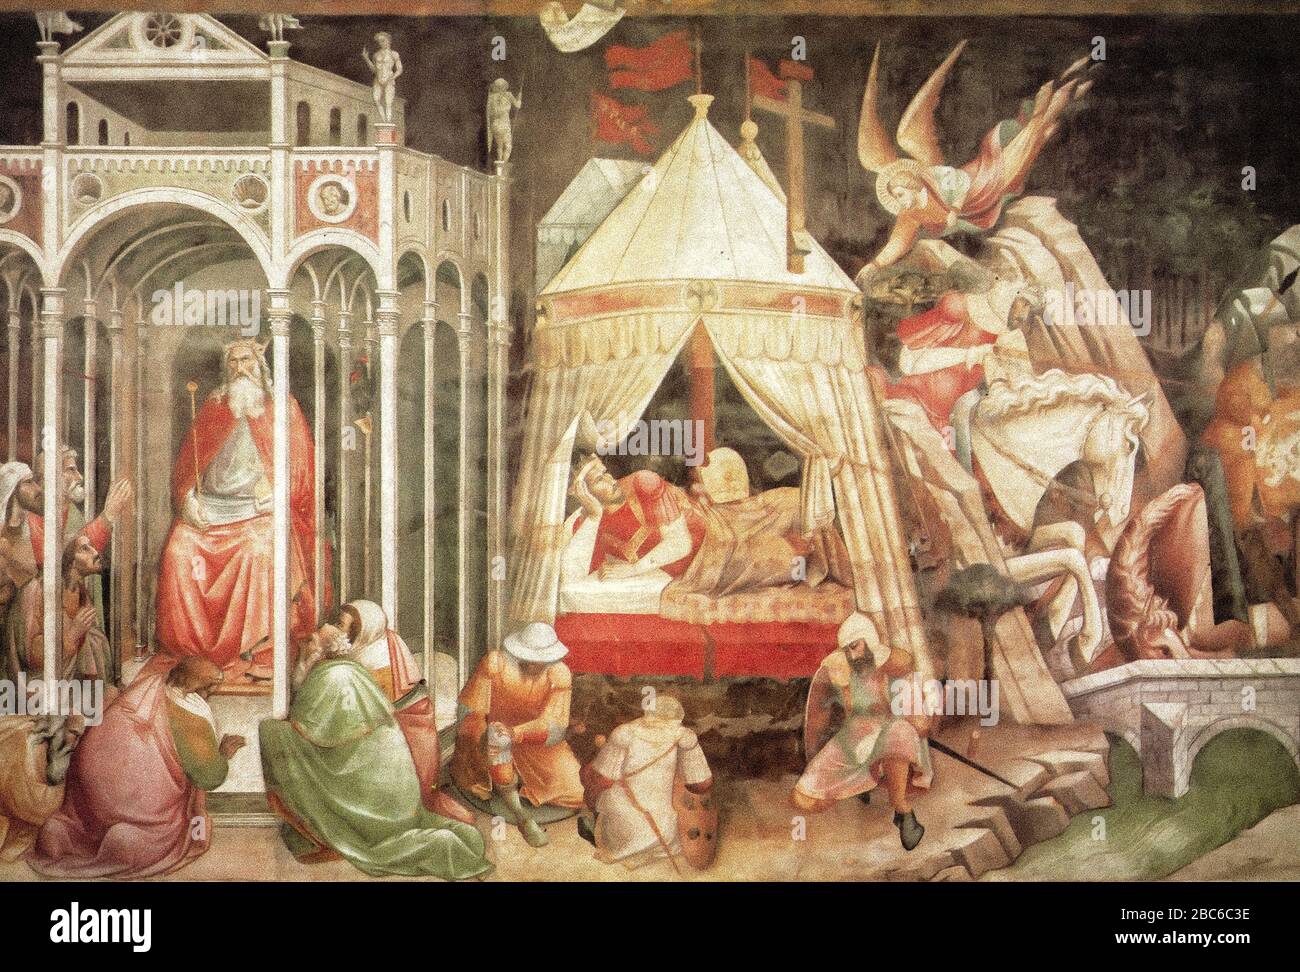 Italia Toscana Firenze - Basilica di Santa Croce - Adorazione di Crosoe, il sogno di Heraclius, il duello di Heraclius, fresco tra il 1388 e il 1392 Foto Stock